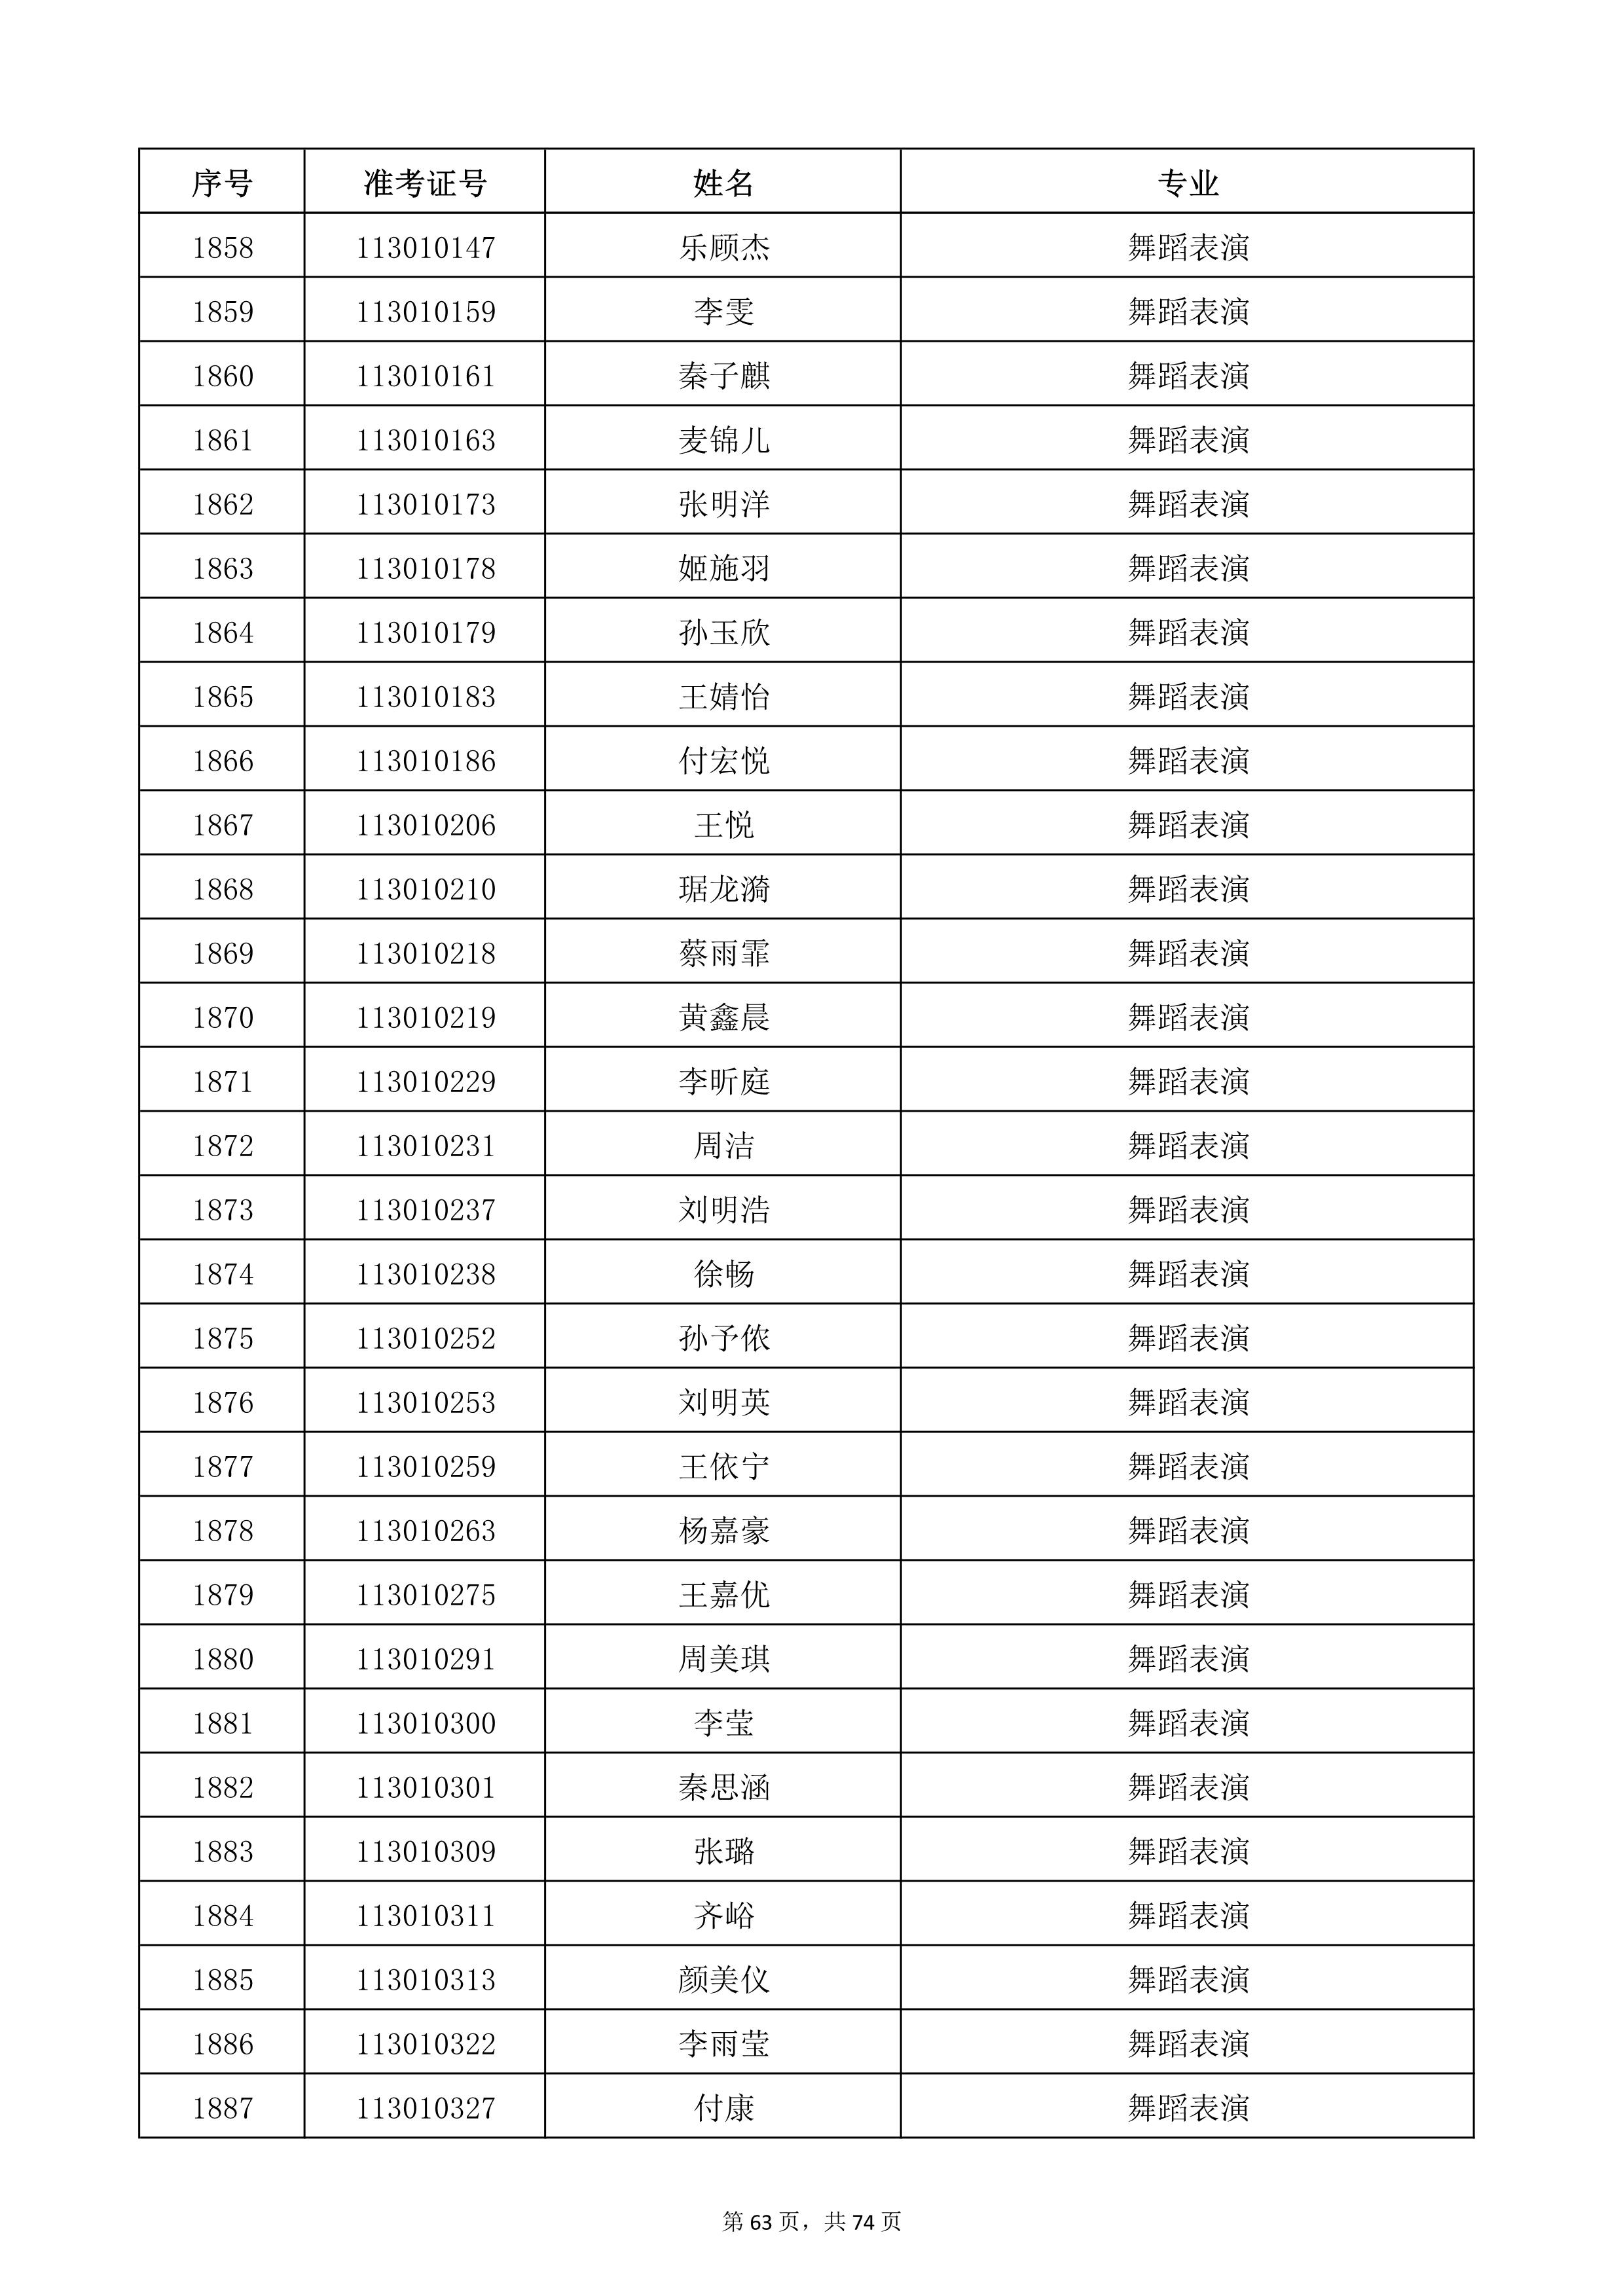 天津音乐学院2022年本科招生考试复试名单_63.jpg